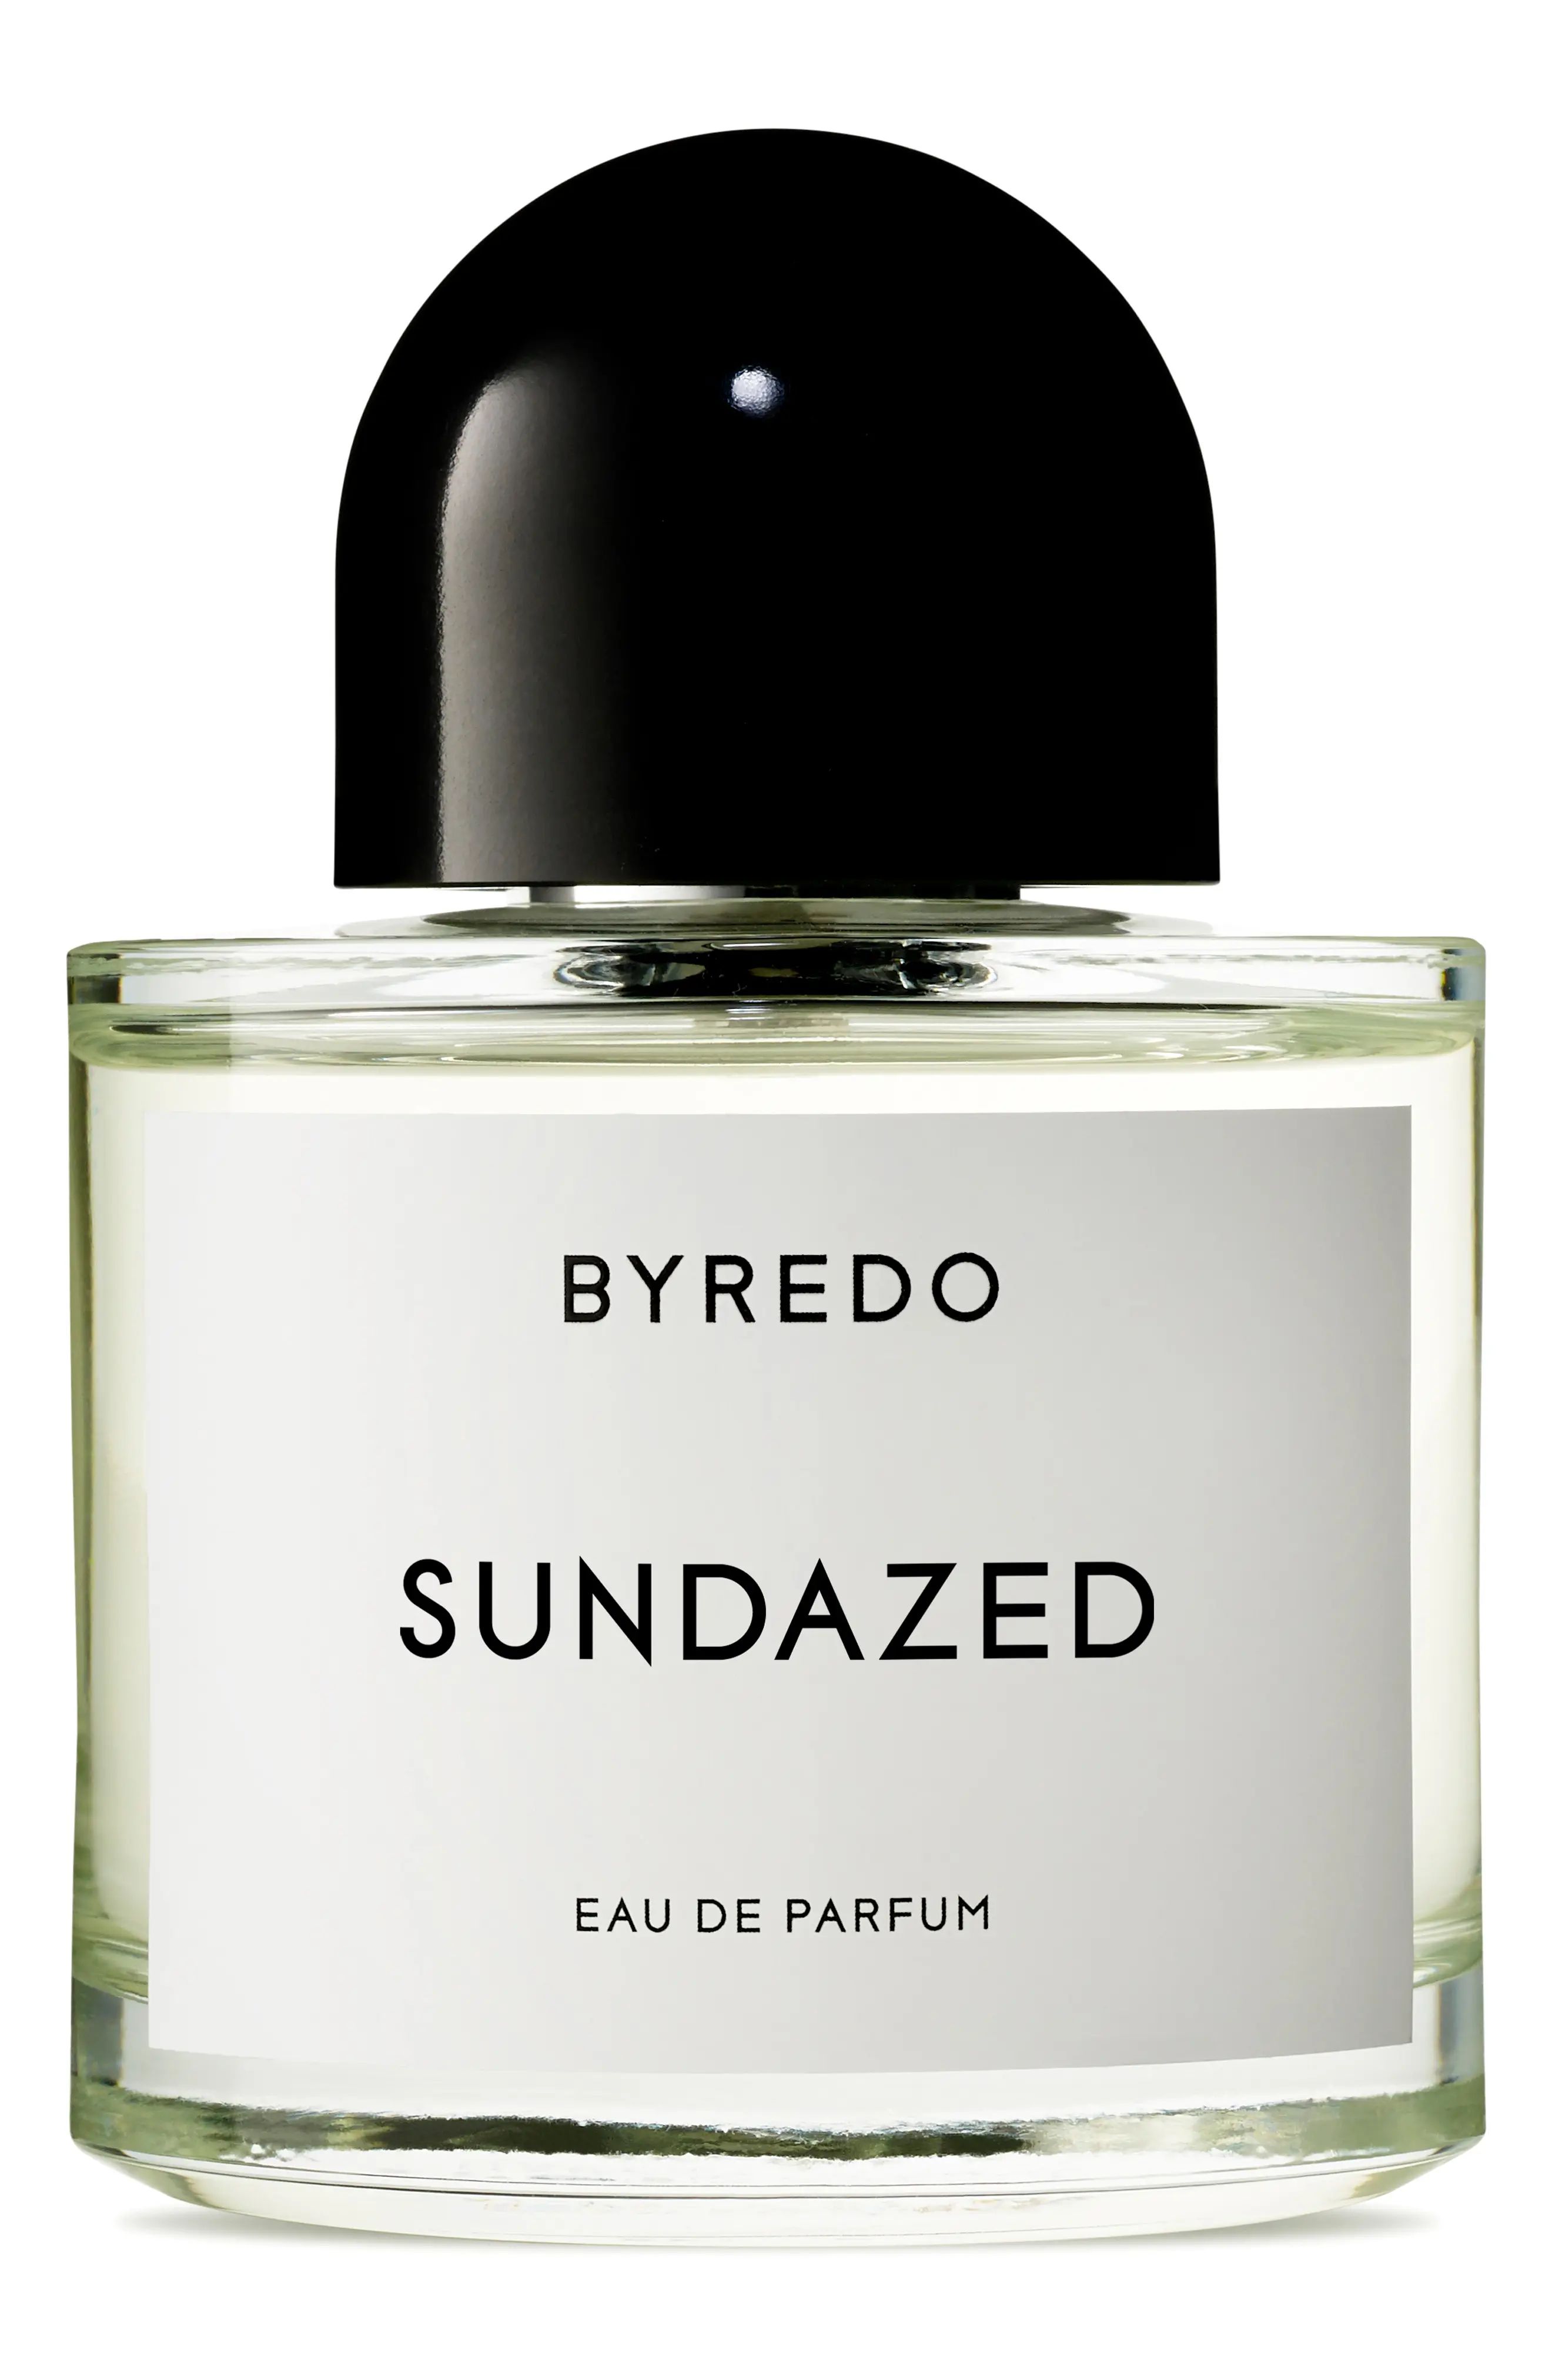 BYREDO Sundazed Eau de Parfum, Size 3.4 Oz at Nordstrom | Nordstrom